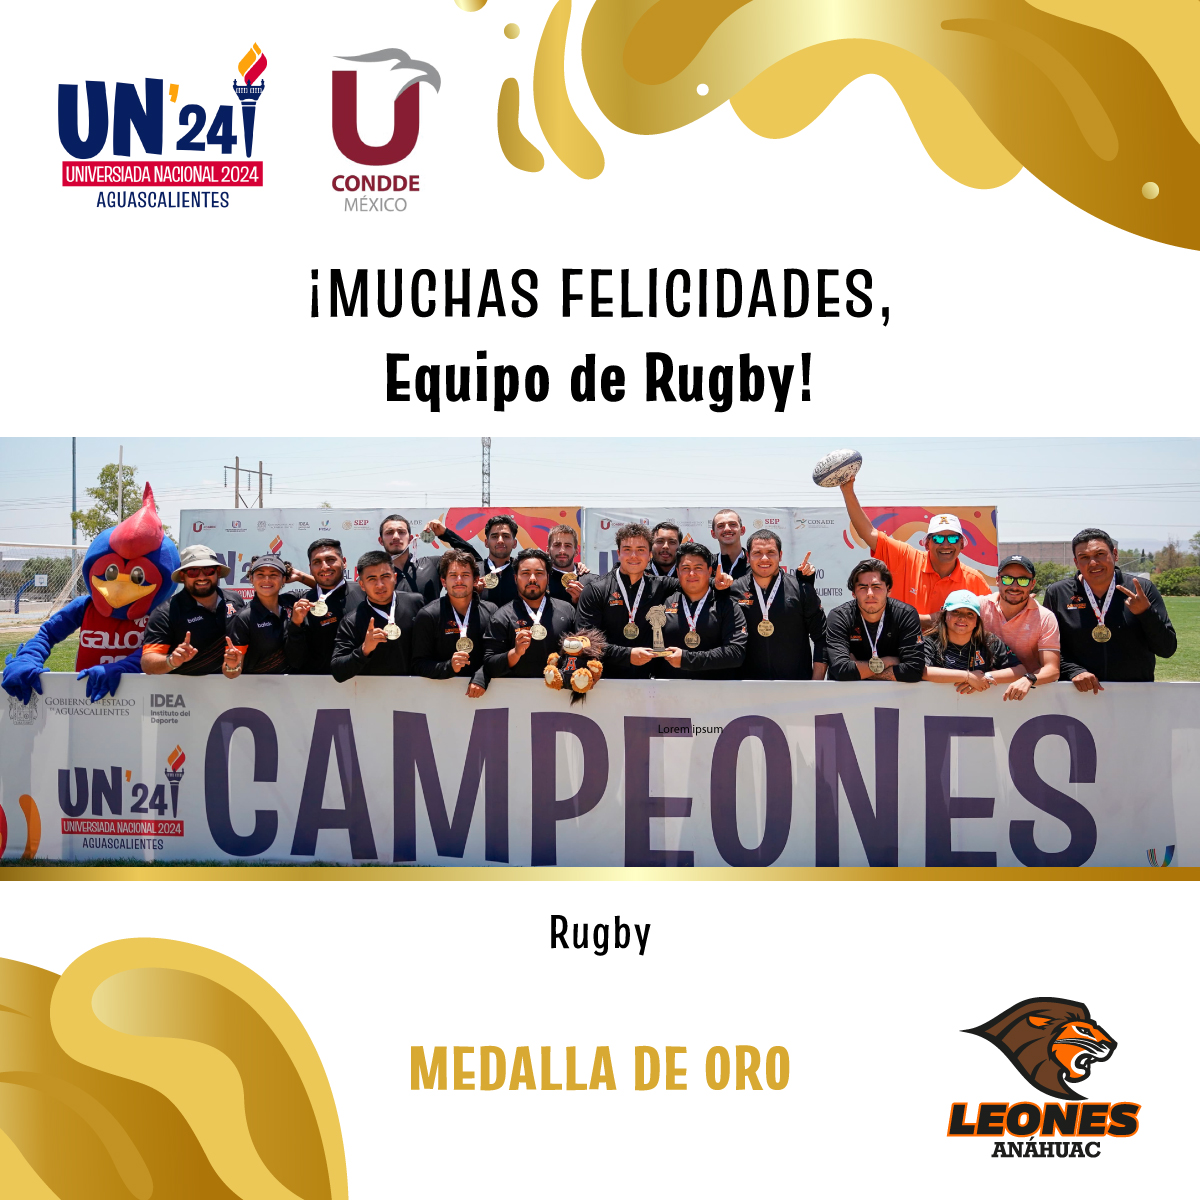 #VamosLeones ¡Campeones de Rugby! 🦁🏉 Nuestro equipo representativo de Rugby se llevó la medalla de oro en esta Universiada Nacional ¡Muchas felicidades leones! 🥇🙌🏼 @UniversiadaMX @ConddeMx #UniversiadaNacional2024